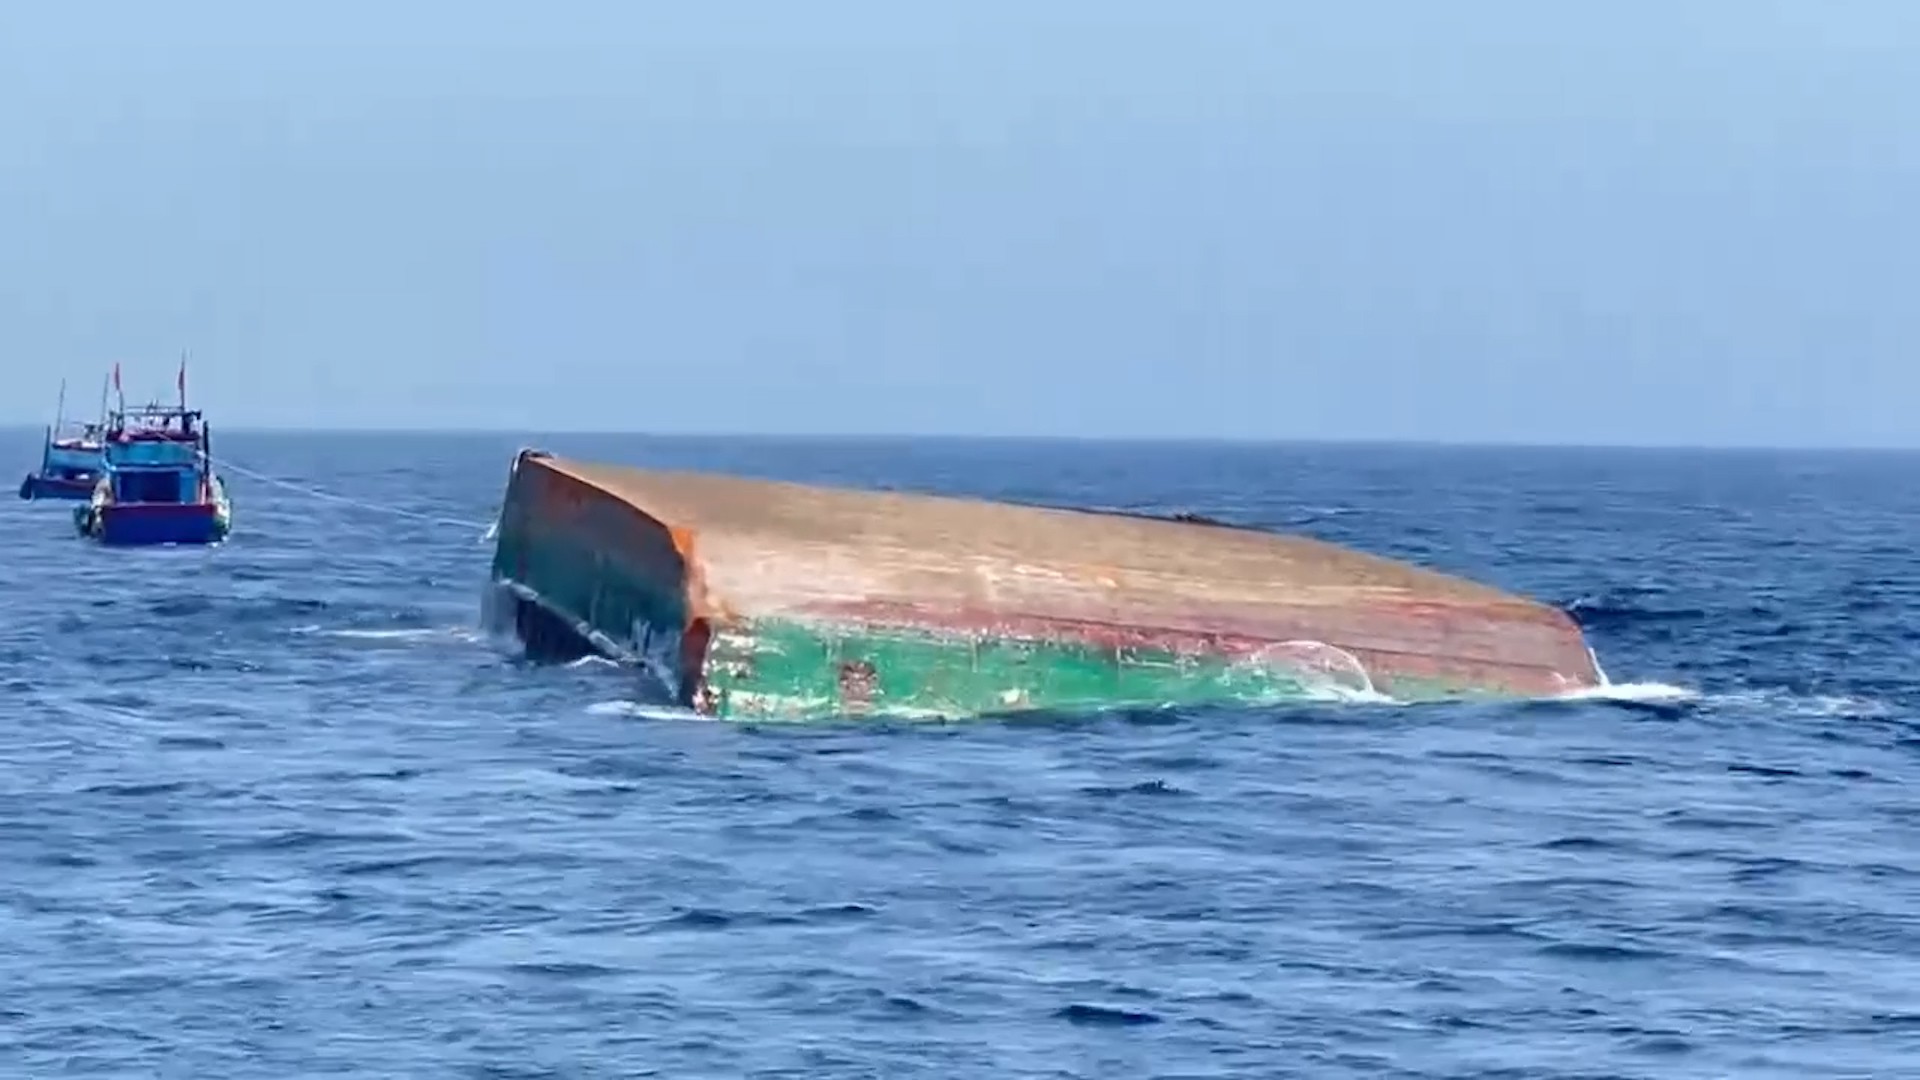  Chiếc sà lan bị nạn chìm trên biển